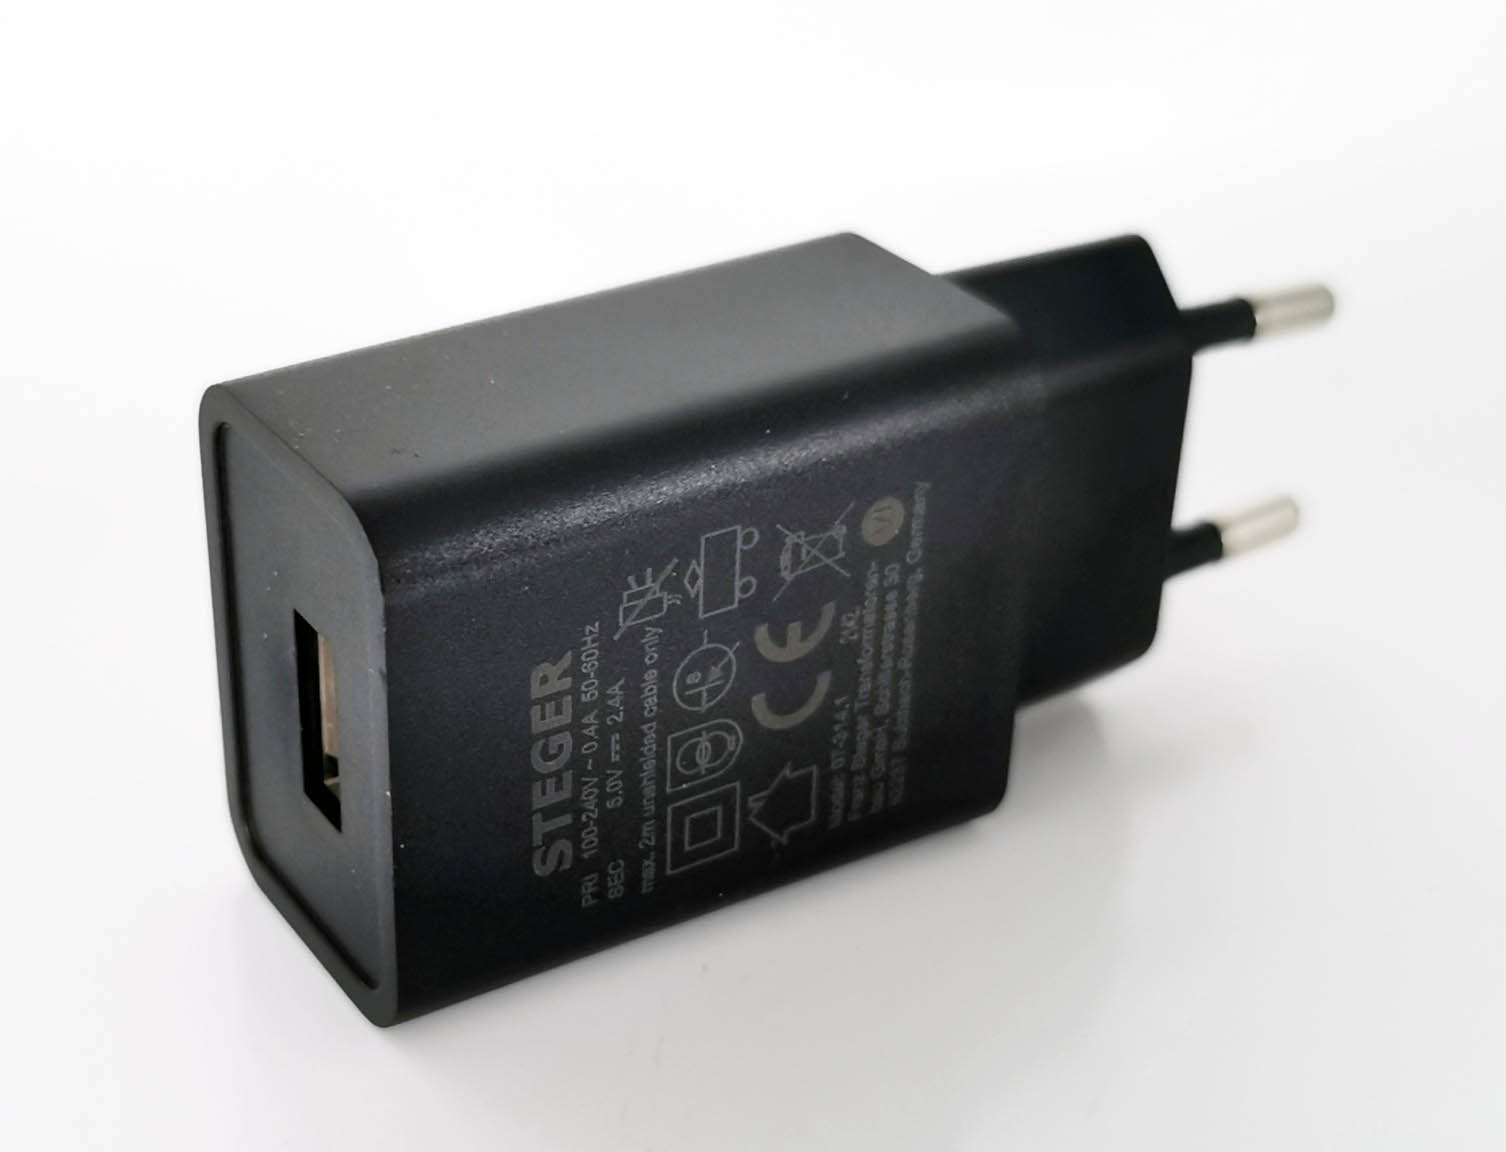 EN 61558 Netzteile - 5V USB-Netzteil mit Sicherheitstransformator